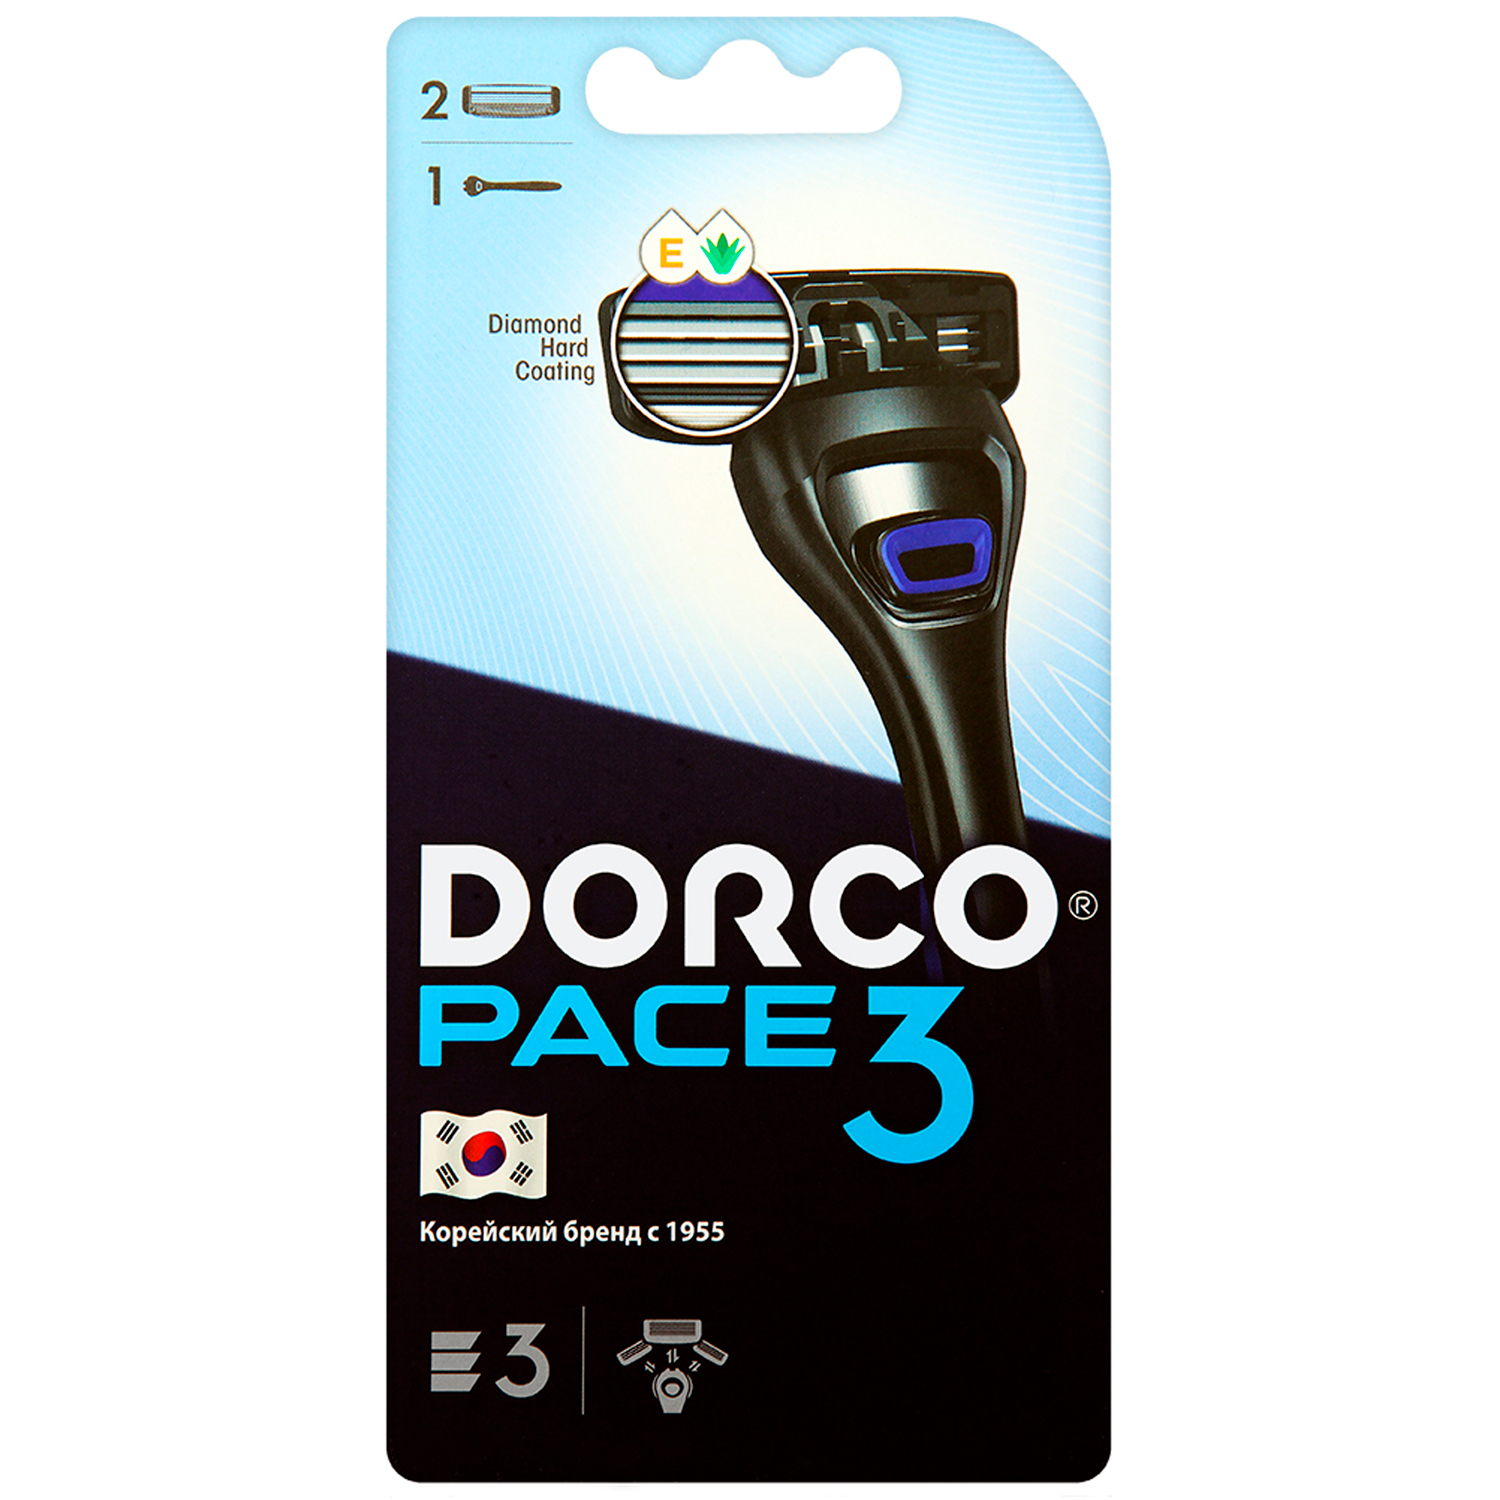 DORCO PACE3 (станок + 2 сменные кассеты)